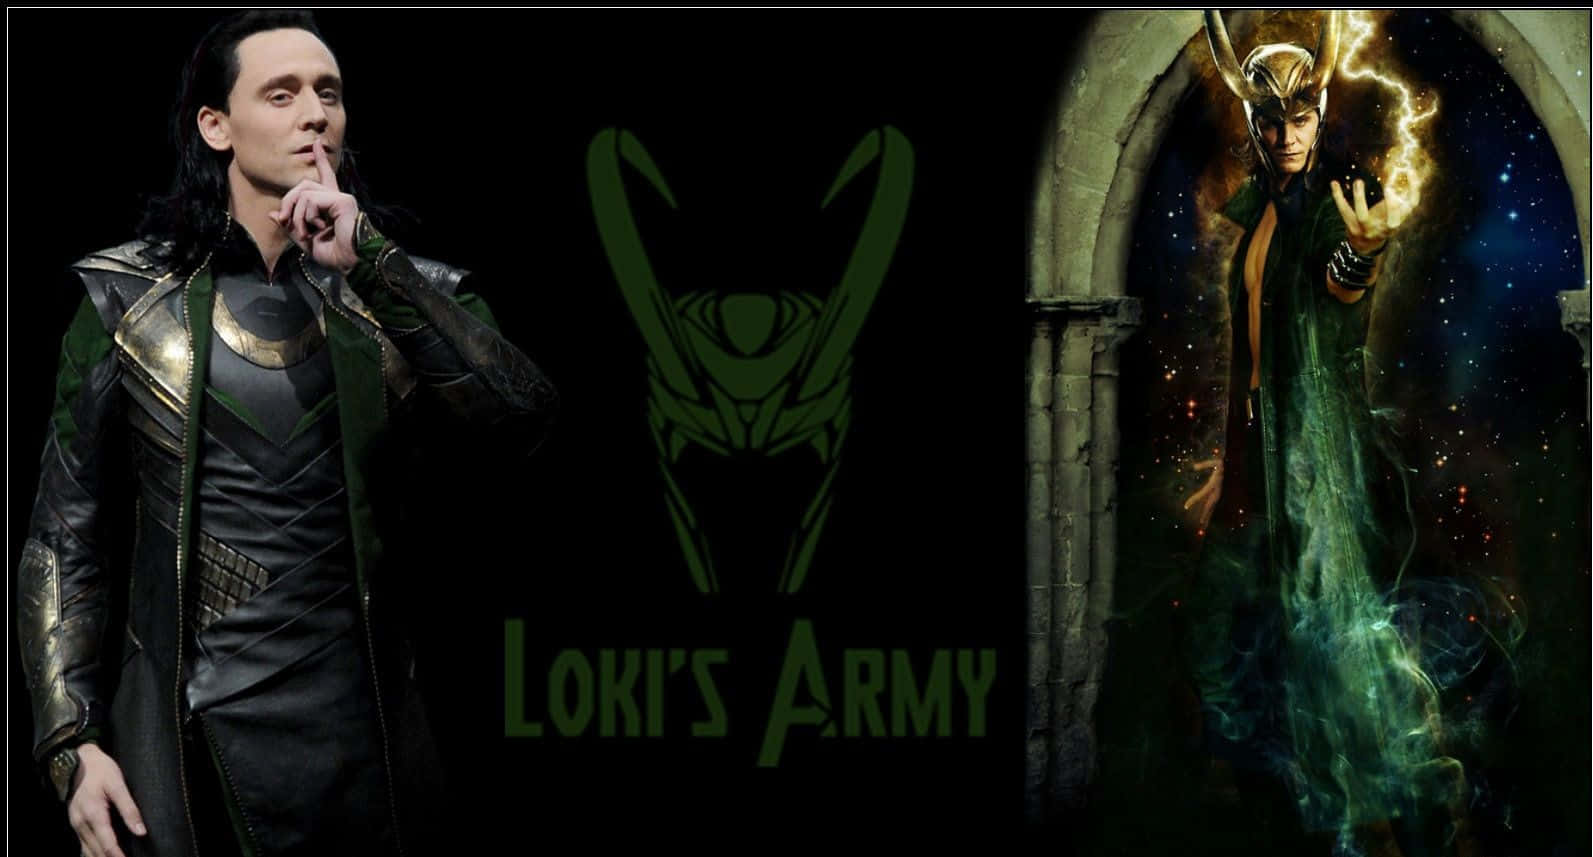 Skämtarenguden Från Asgård, Loki